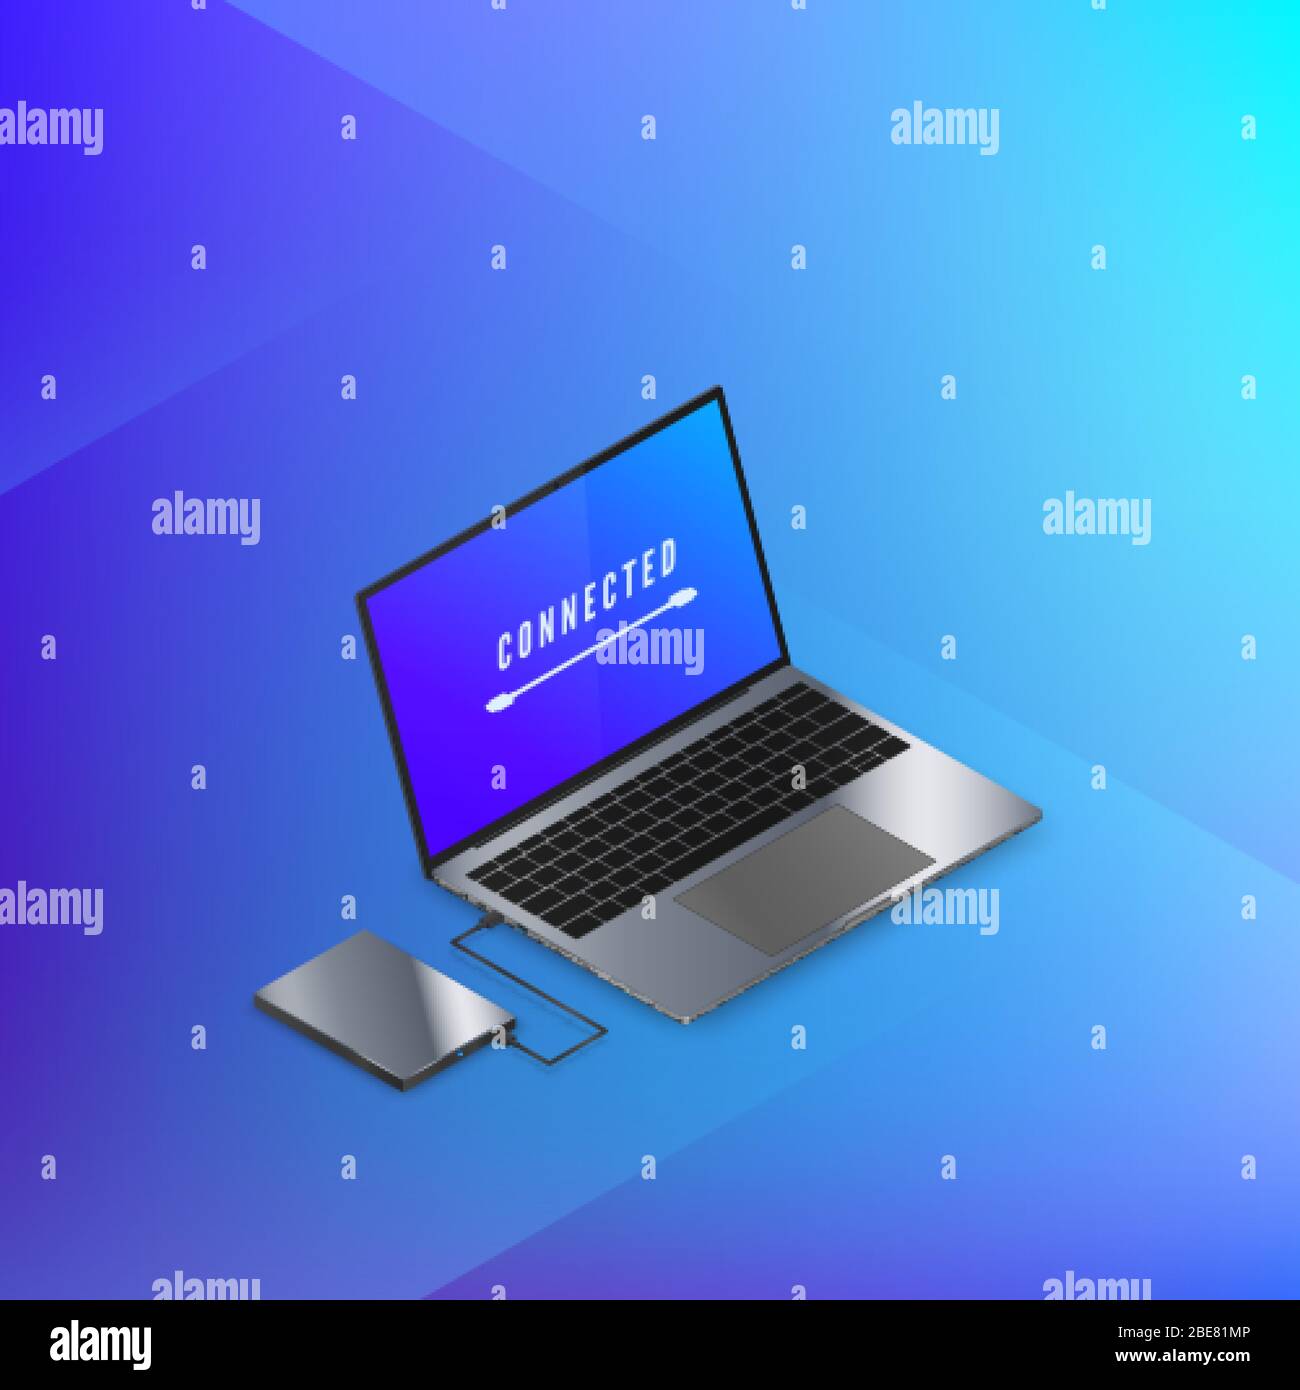 Festplatte mit Laptop verbunden isometrisches Banner in blauen Farben. Technischer Hintergrund. Vektorgrafik Stock Vektor